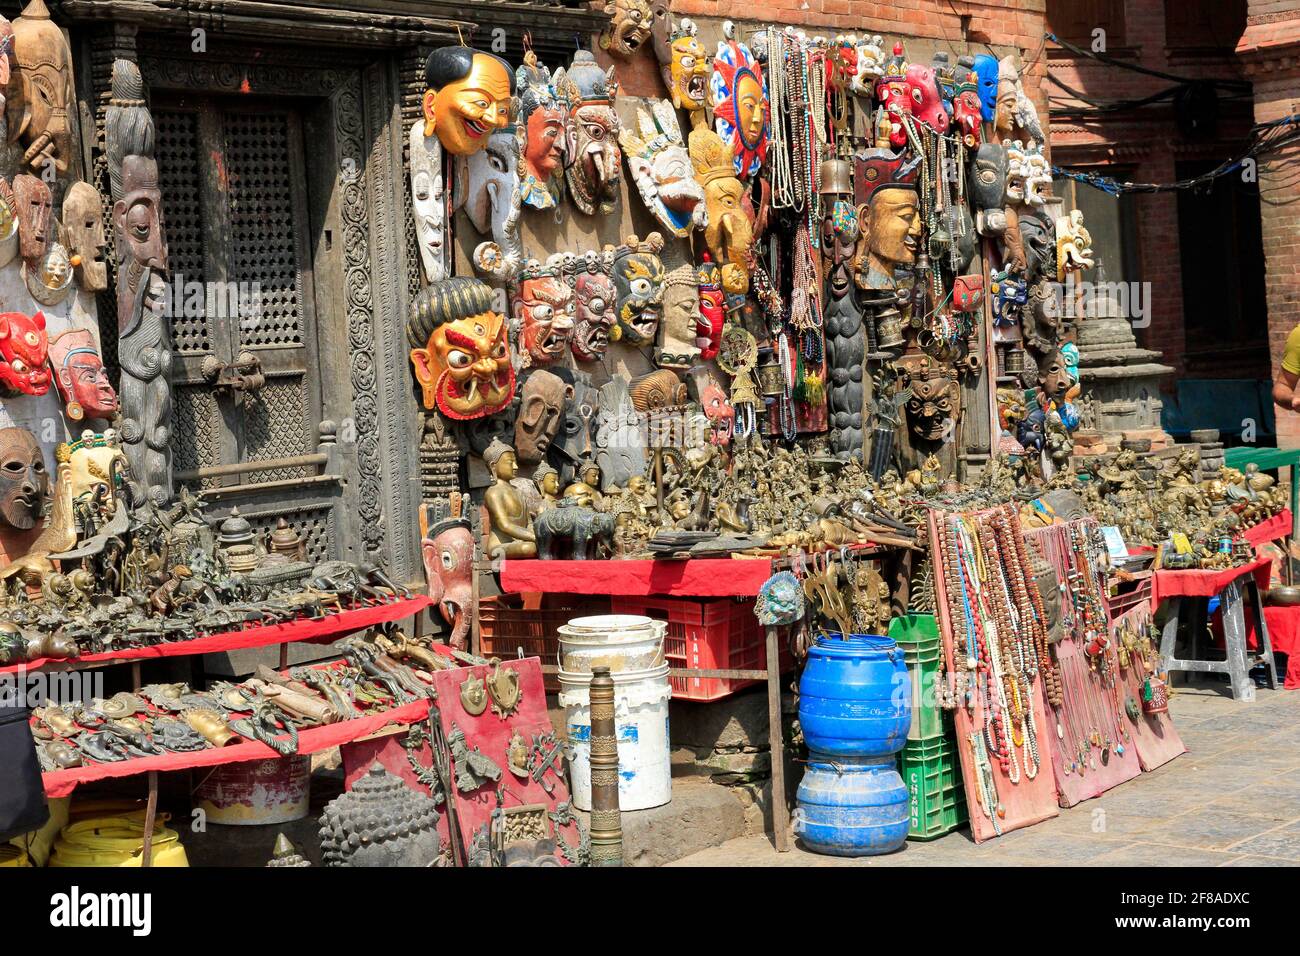 Outdoor market stall in Kathmandu, Nepal Stock Photo